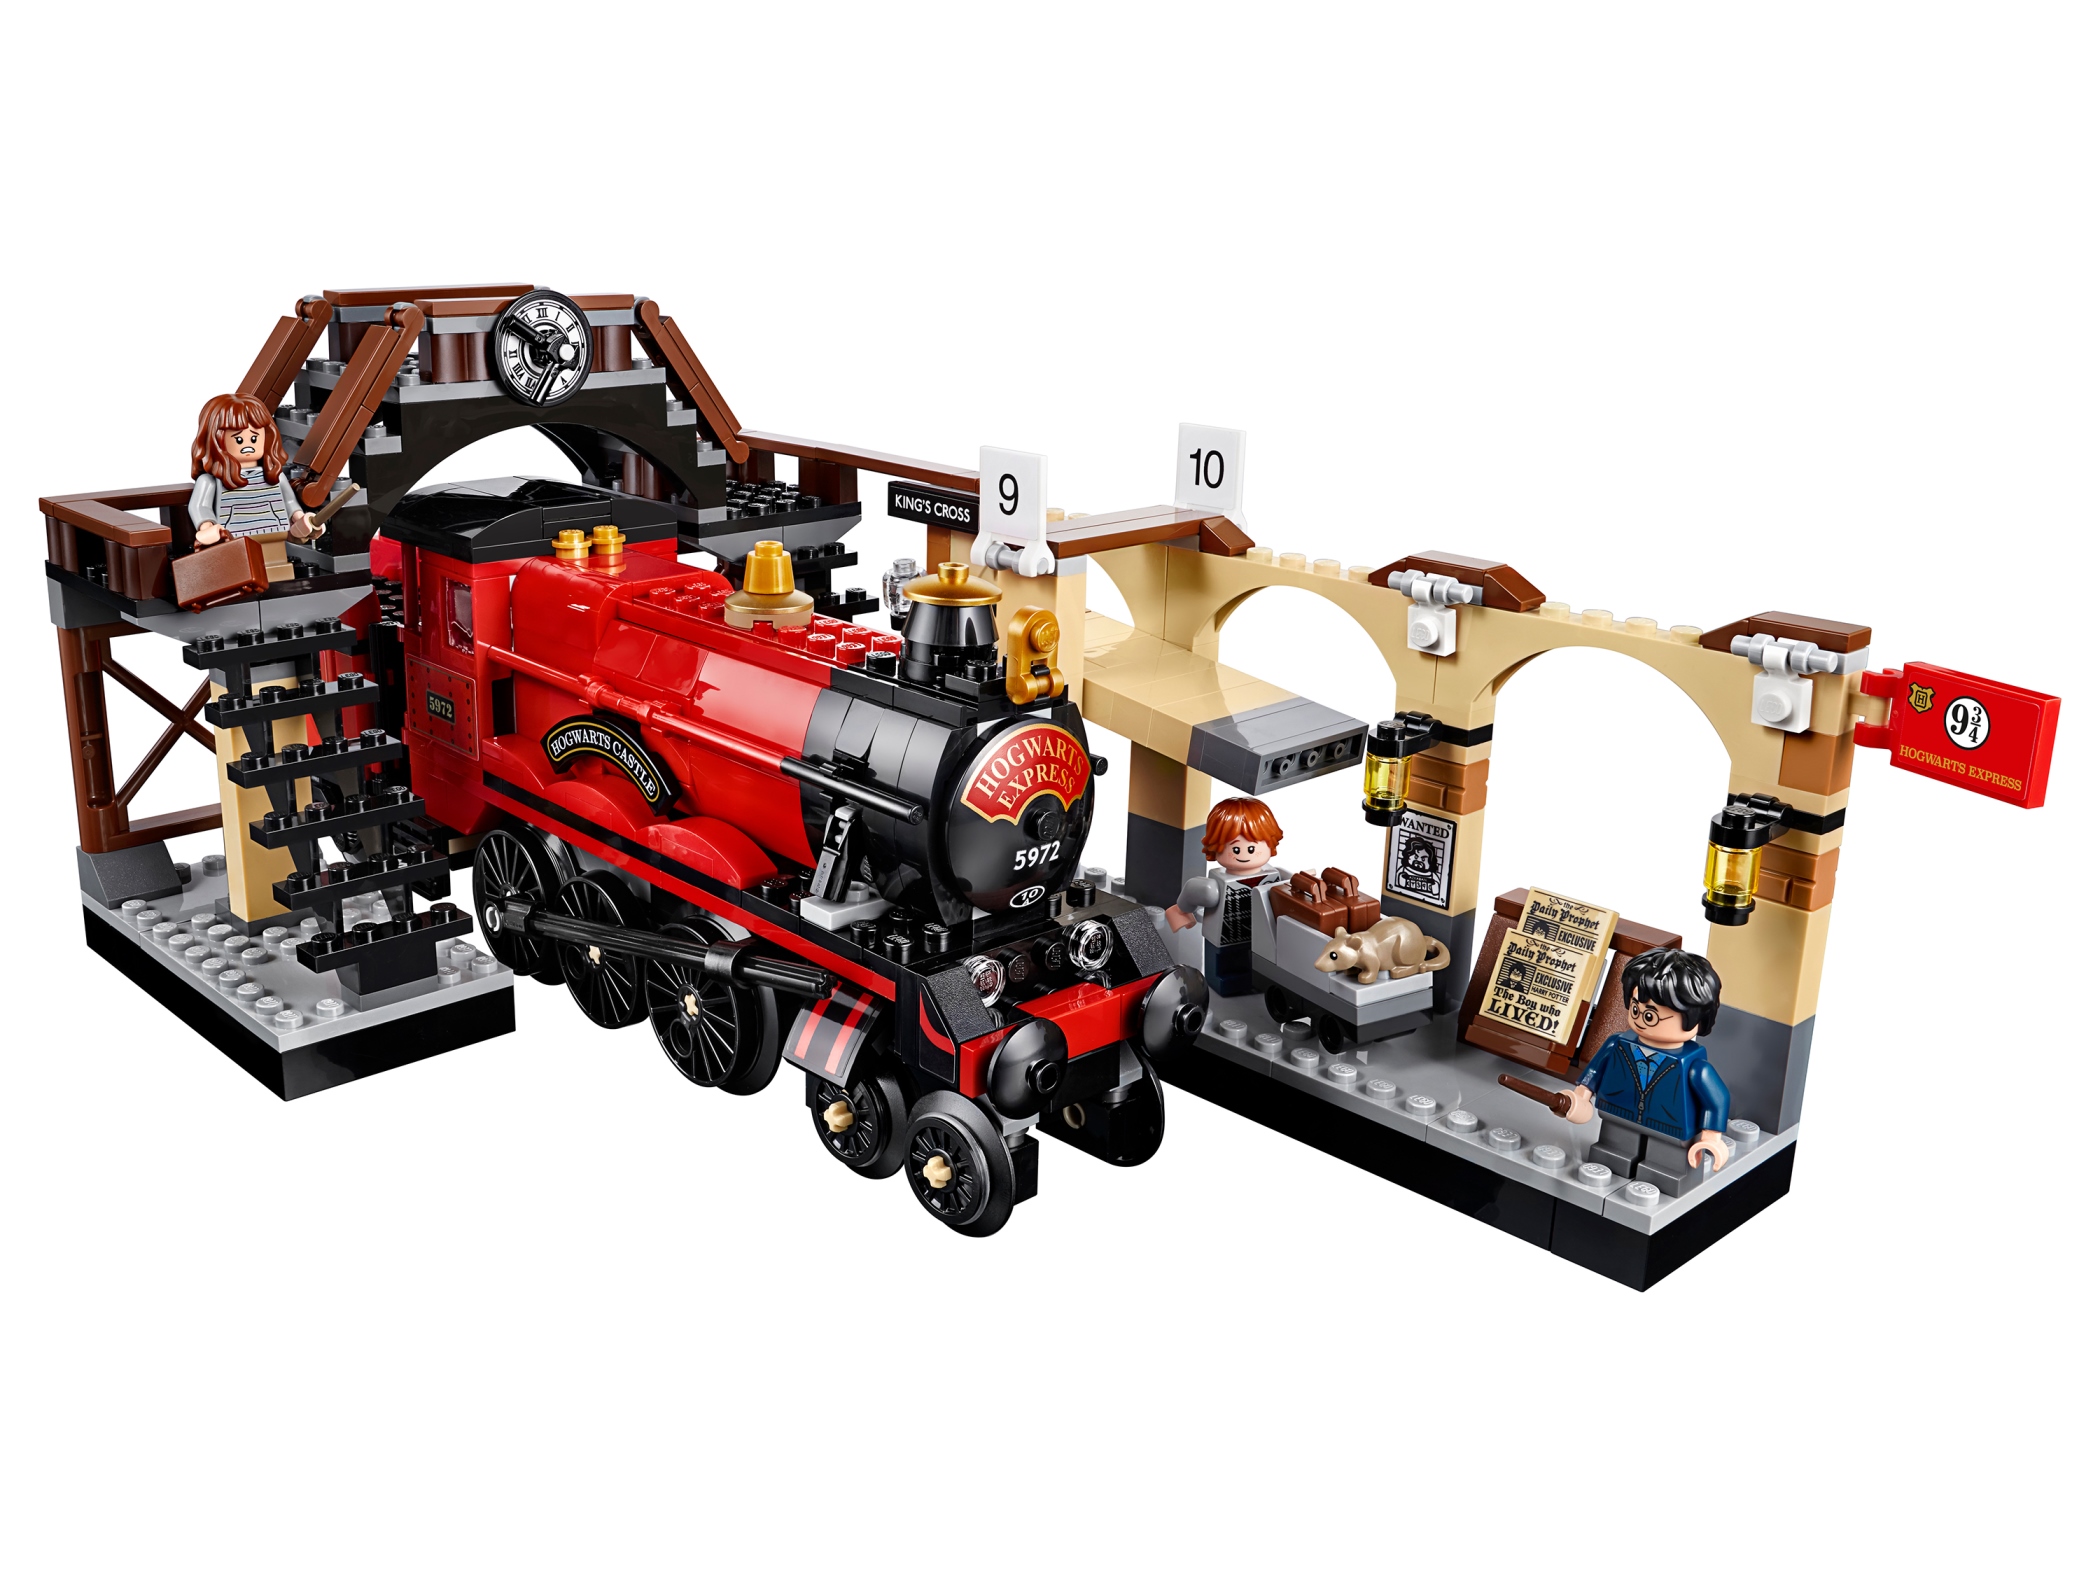 Lego Harry Potter 75955 Хогвартс-экспресс